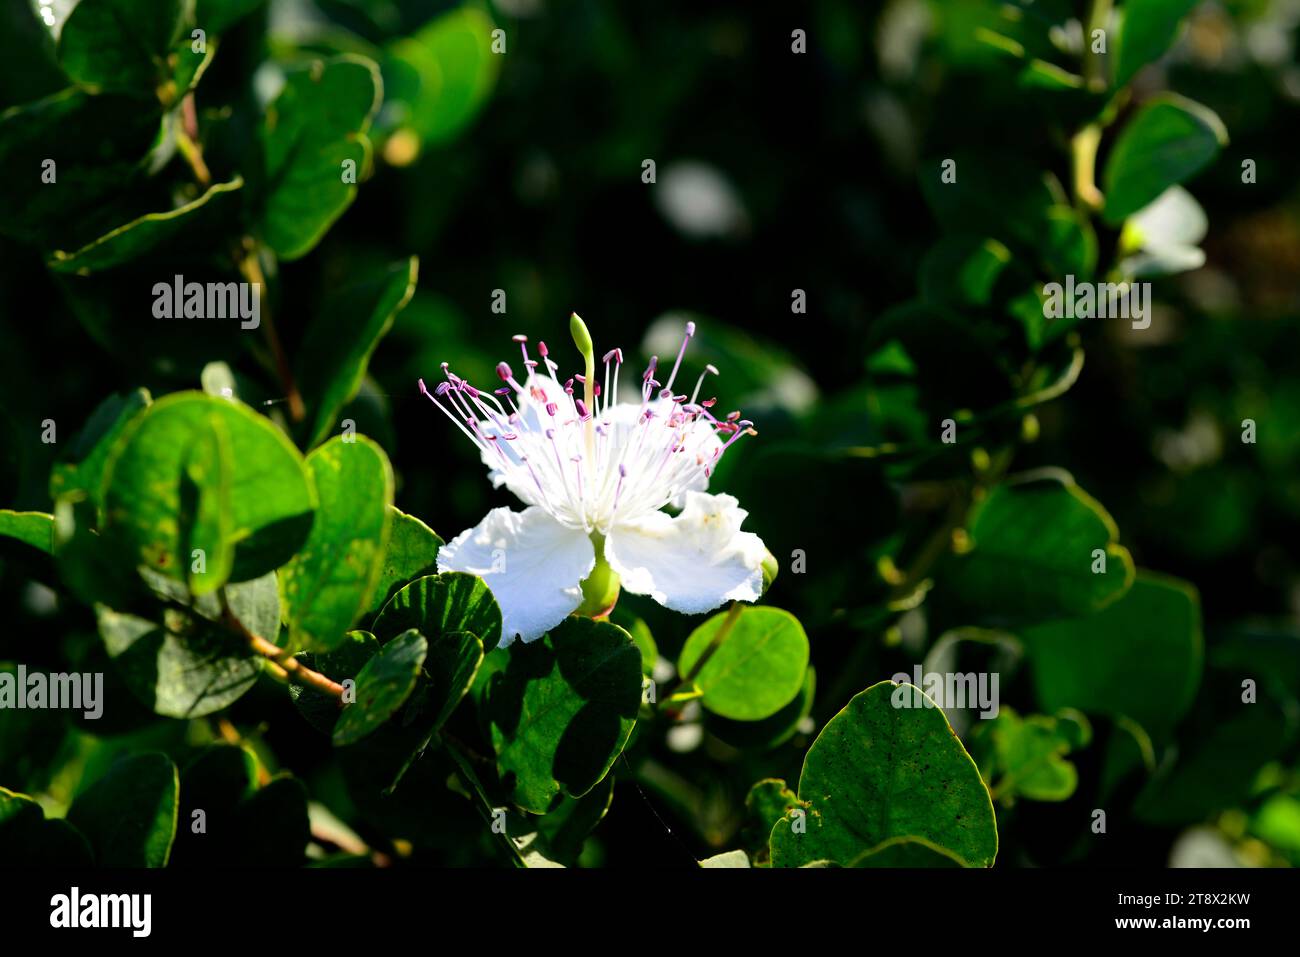 Il cespuglio di capperi (Capparis spinosa) è un arbusto spinoso presente in tutto il bacino del Mediterraneo. I suoi boccioli di fiori (capperi) e i frutti (bacche di cappero) sono commestibili. T Foto Stock